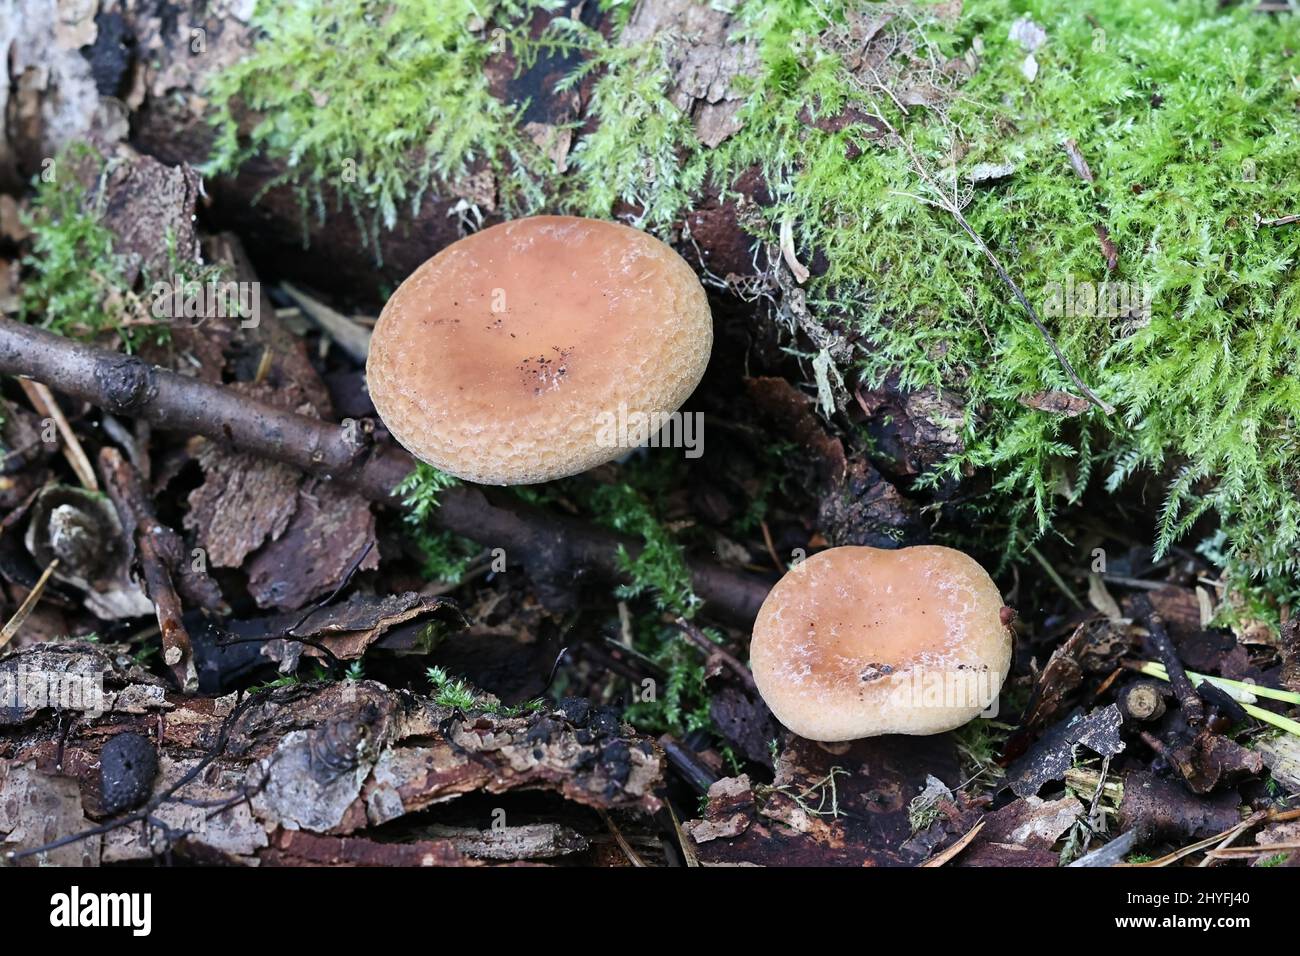 Paralepista gilva, connu sous le nom de Tawny Funnel, champignon sauvage de Finlande Banque D'Images